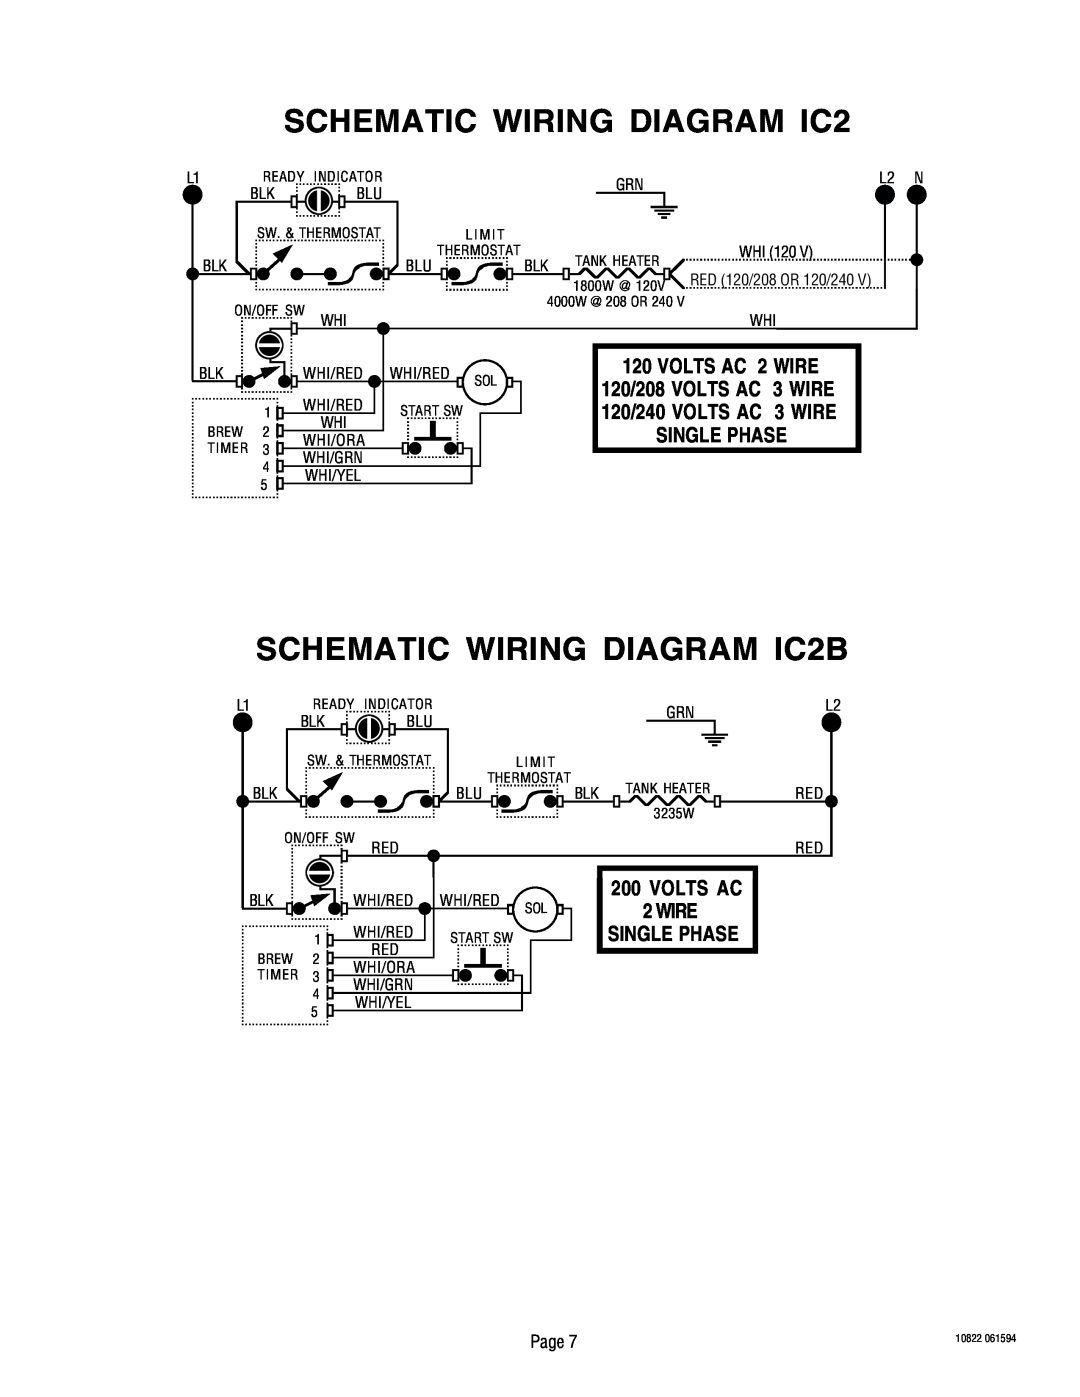 Bunn warranty Wire, SCHEMATIC WIRING DIAGRAM IC2B, Volts Ac, VOLTS AC 2 WIRE, 120/208 VOLTS AC 3 WIRE, Single Phase 